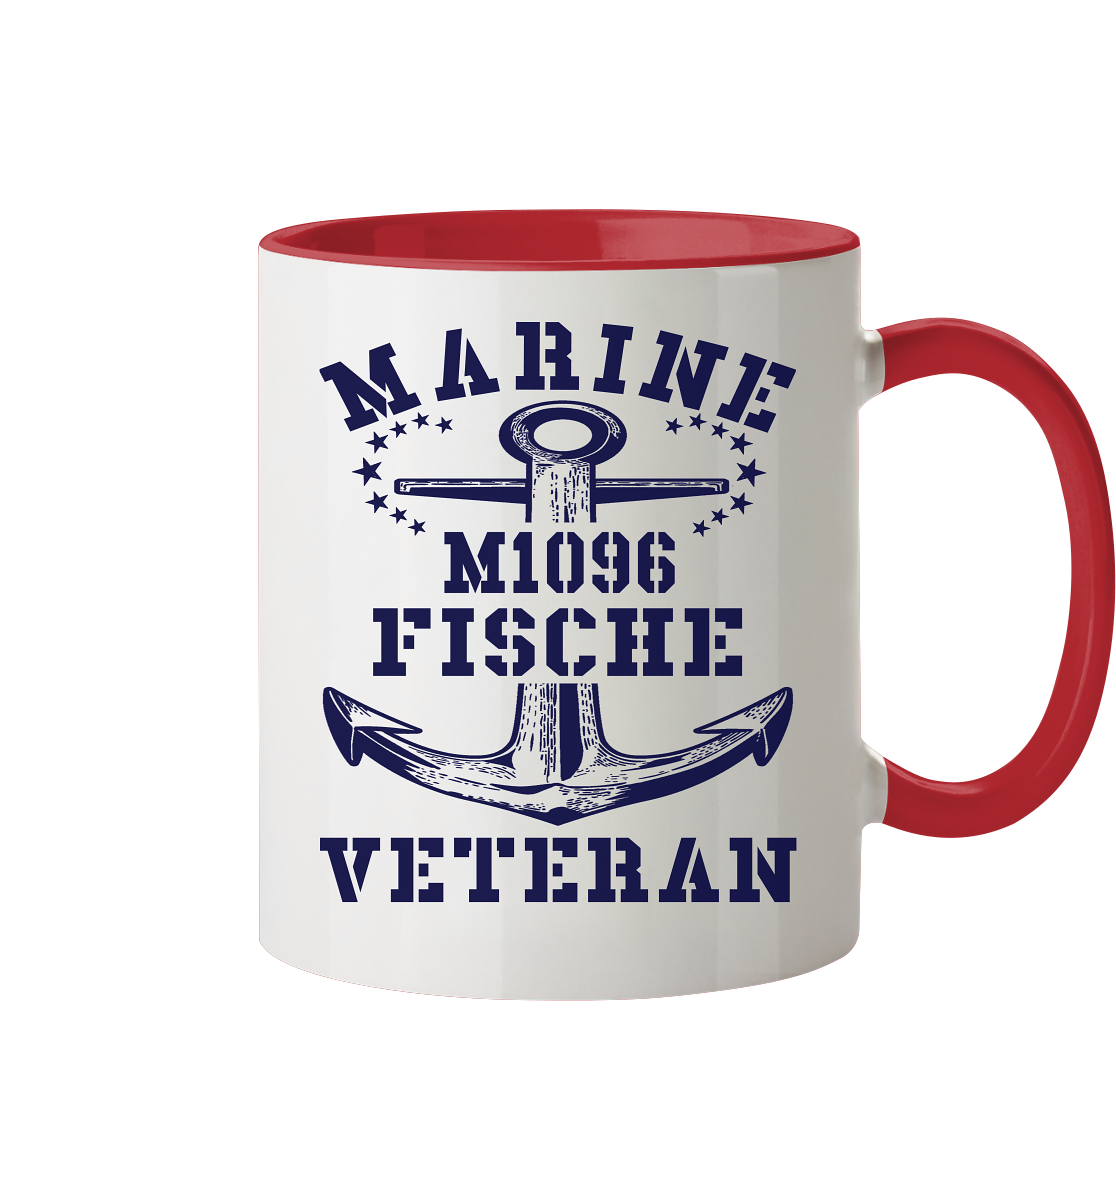 SM-Boot M1096 FISCHE Marine Veteran - Tasse zweifarbig